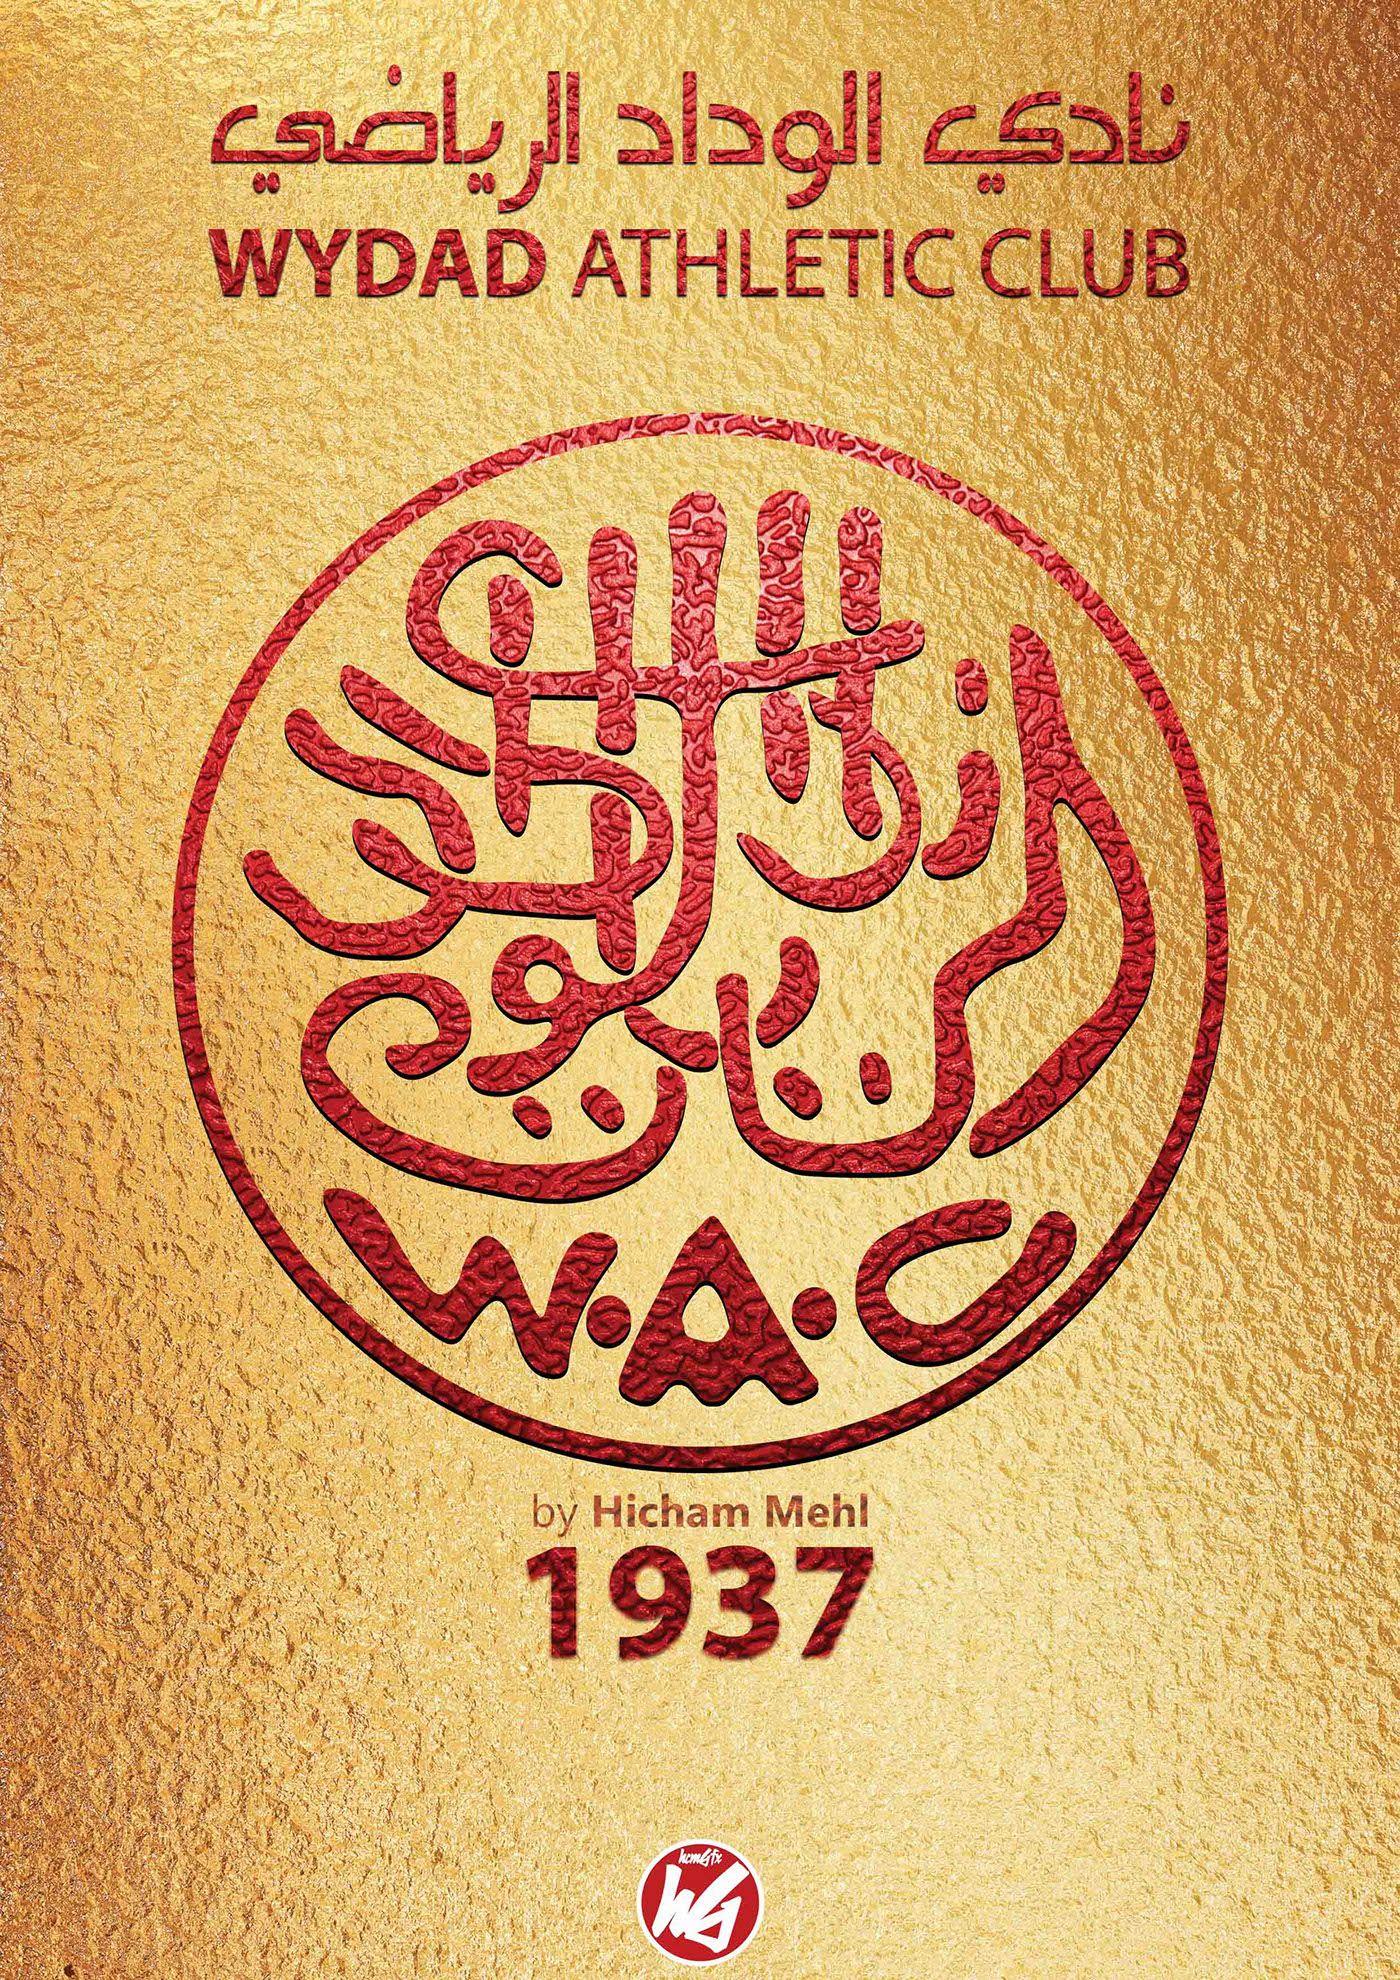 WAC Logo - Ancien logo du WYDAD ATHLETIC CLUB on Behance